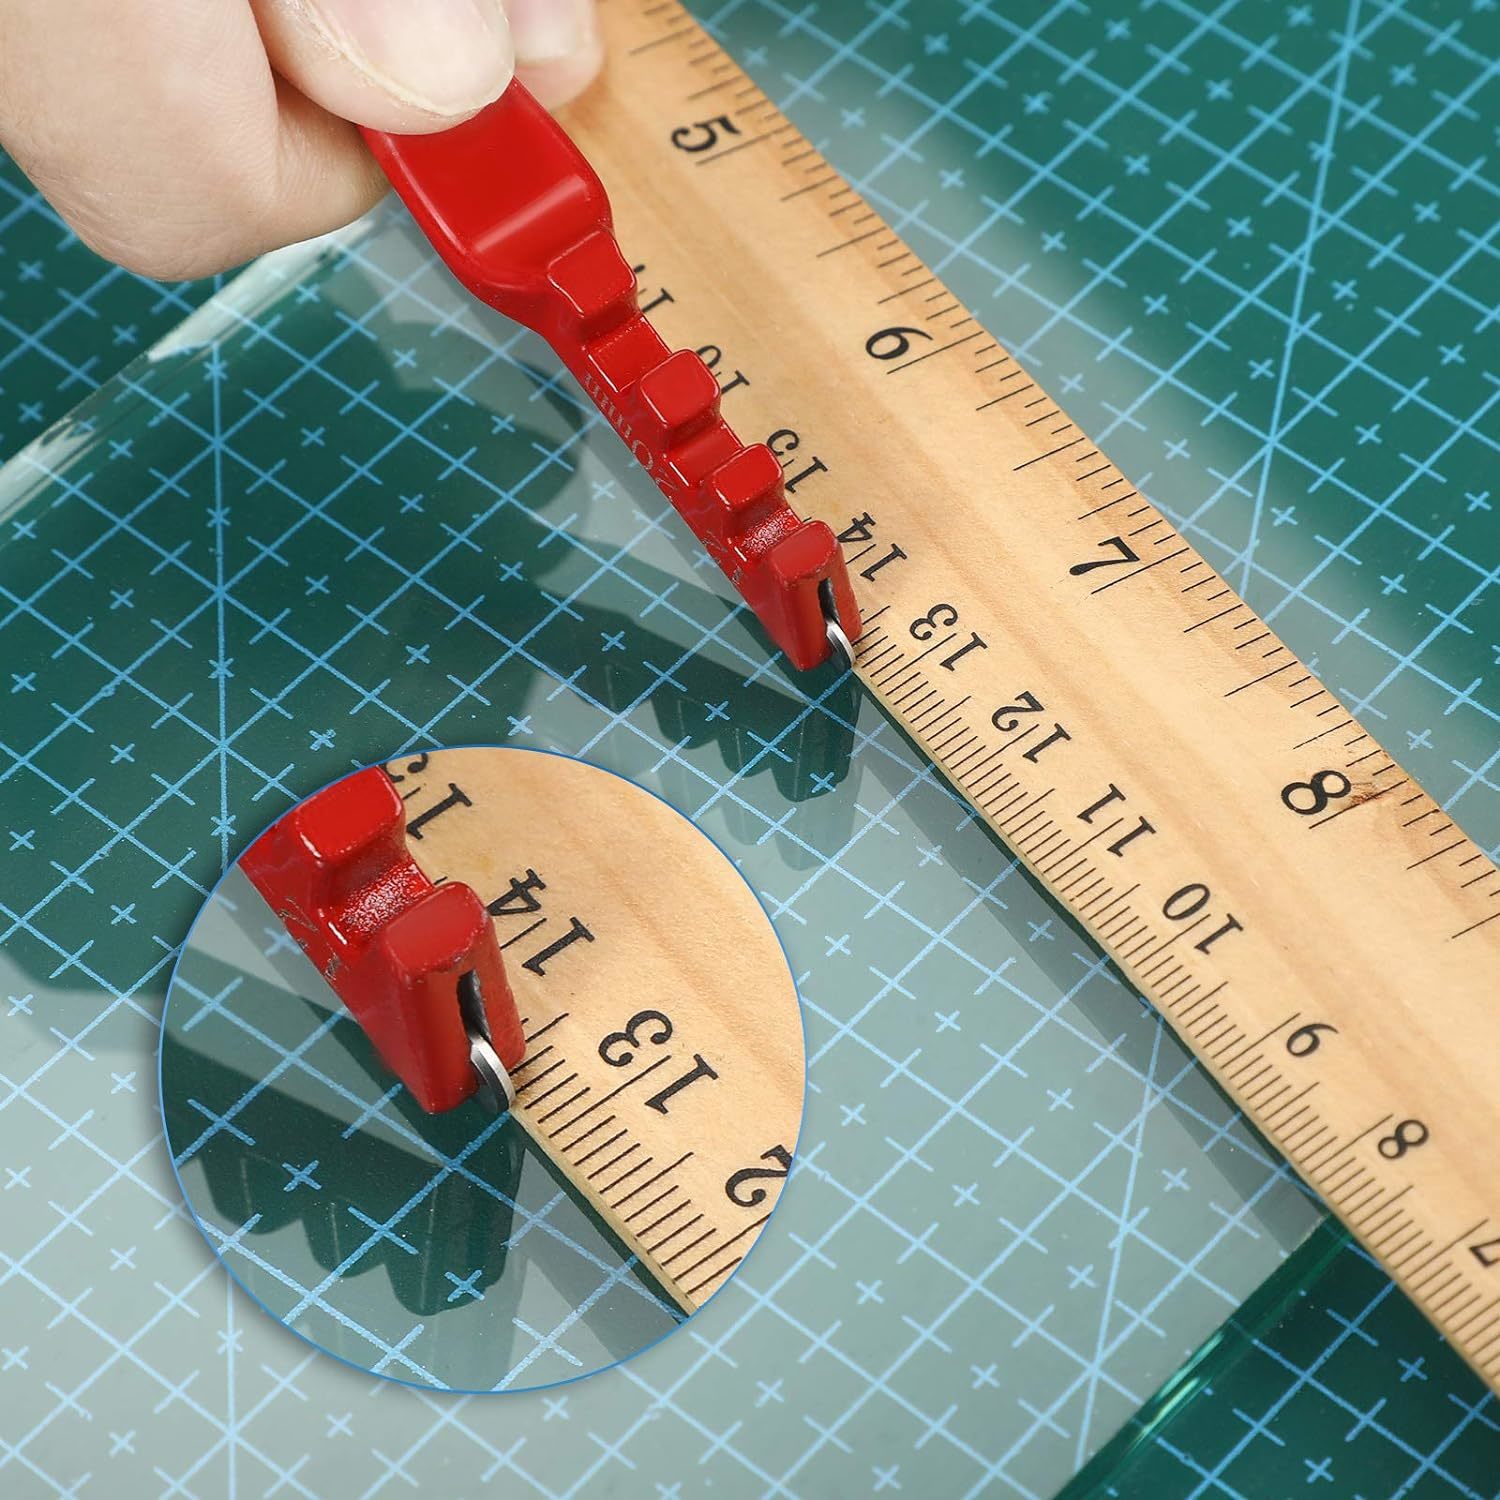 9 Pcs Glass Cutting Tool Set Kit Includes Adjustable Circular